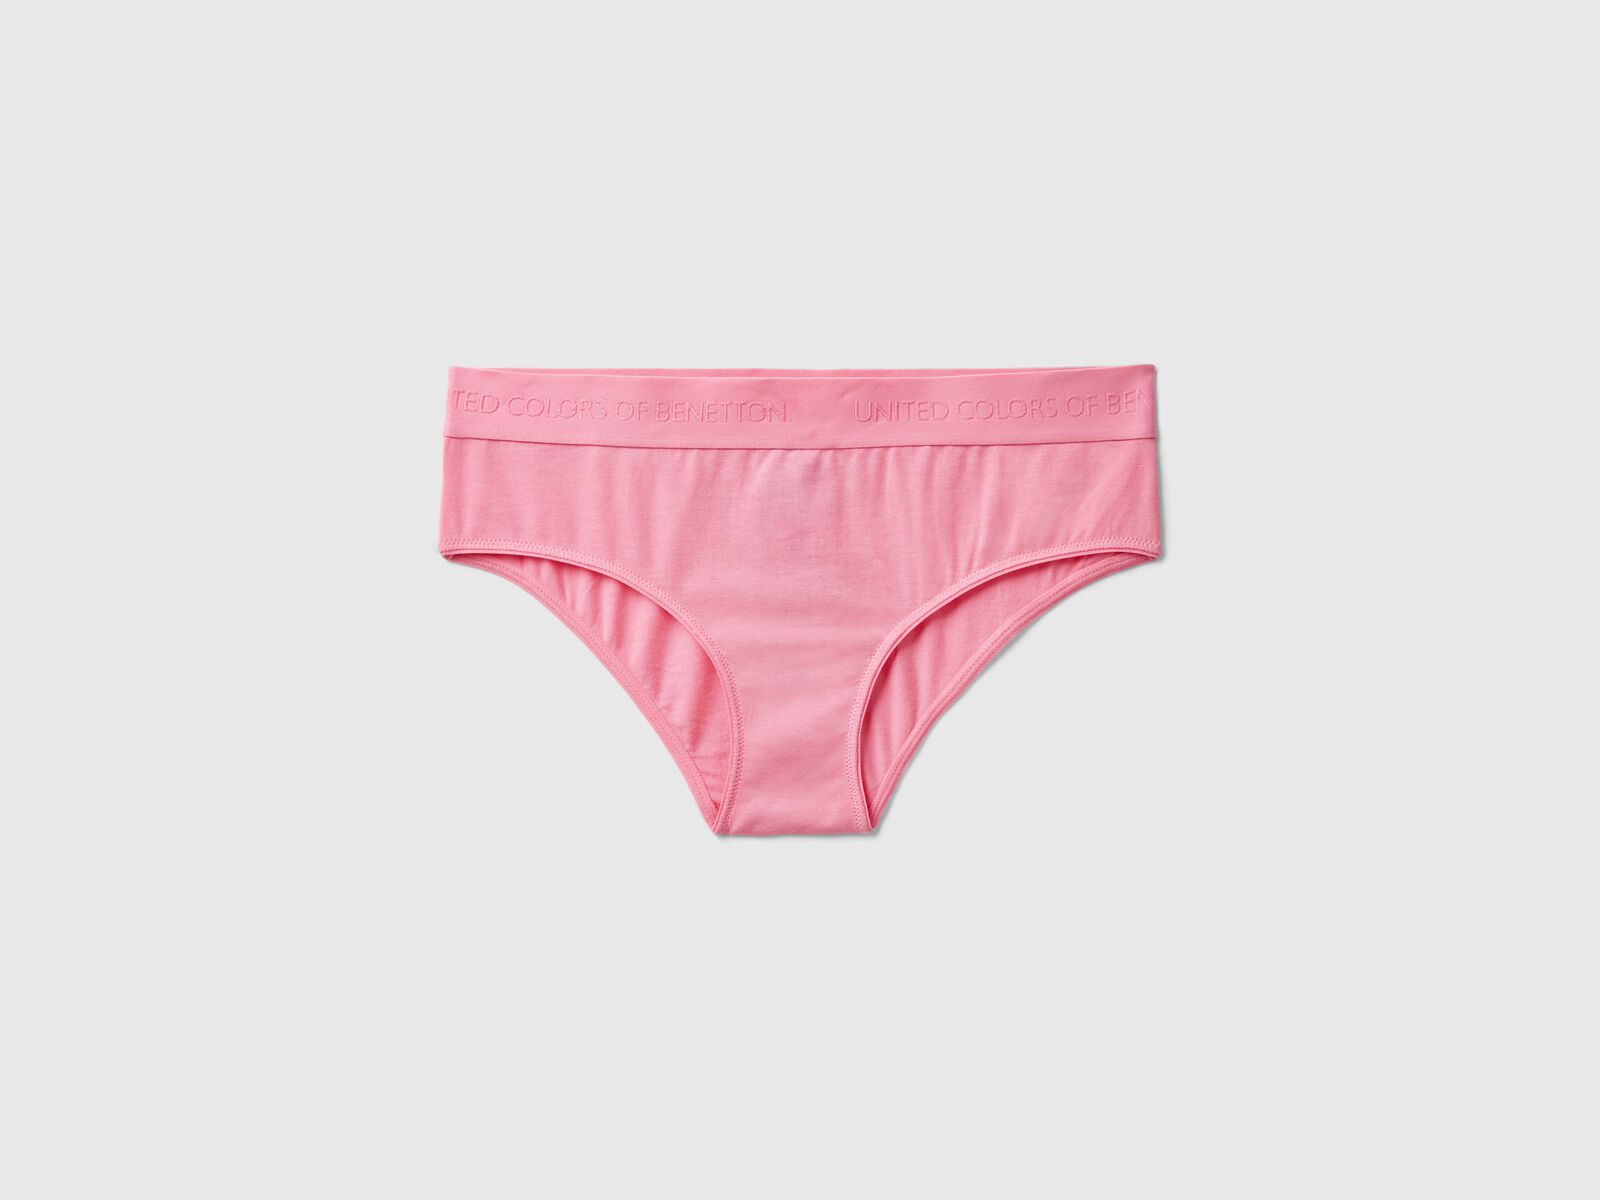 High-rise underwear in organic cotton - Pink